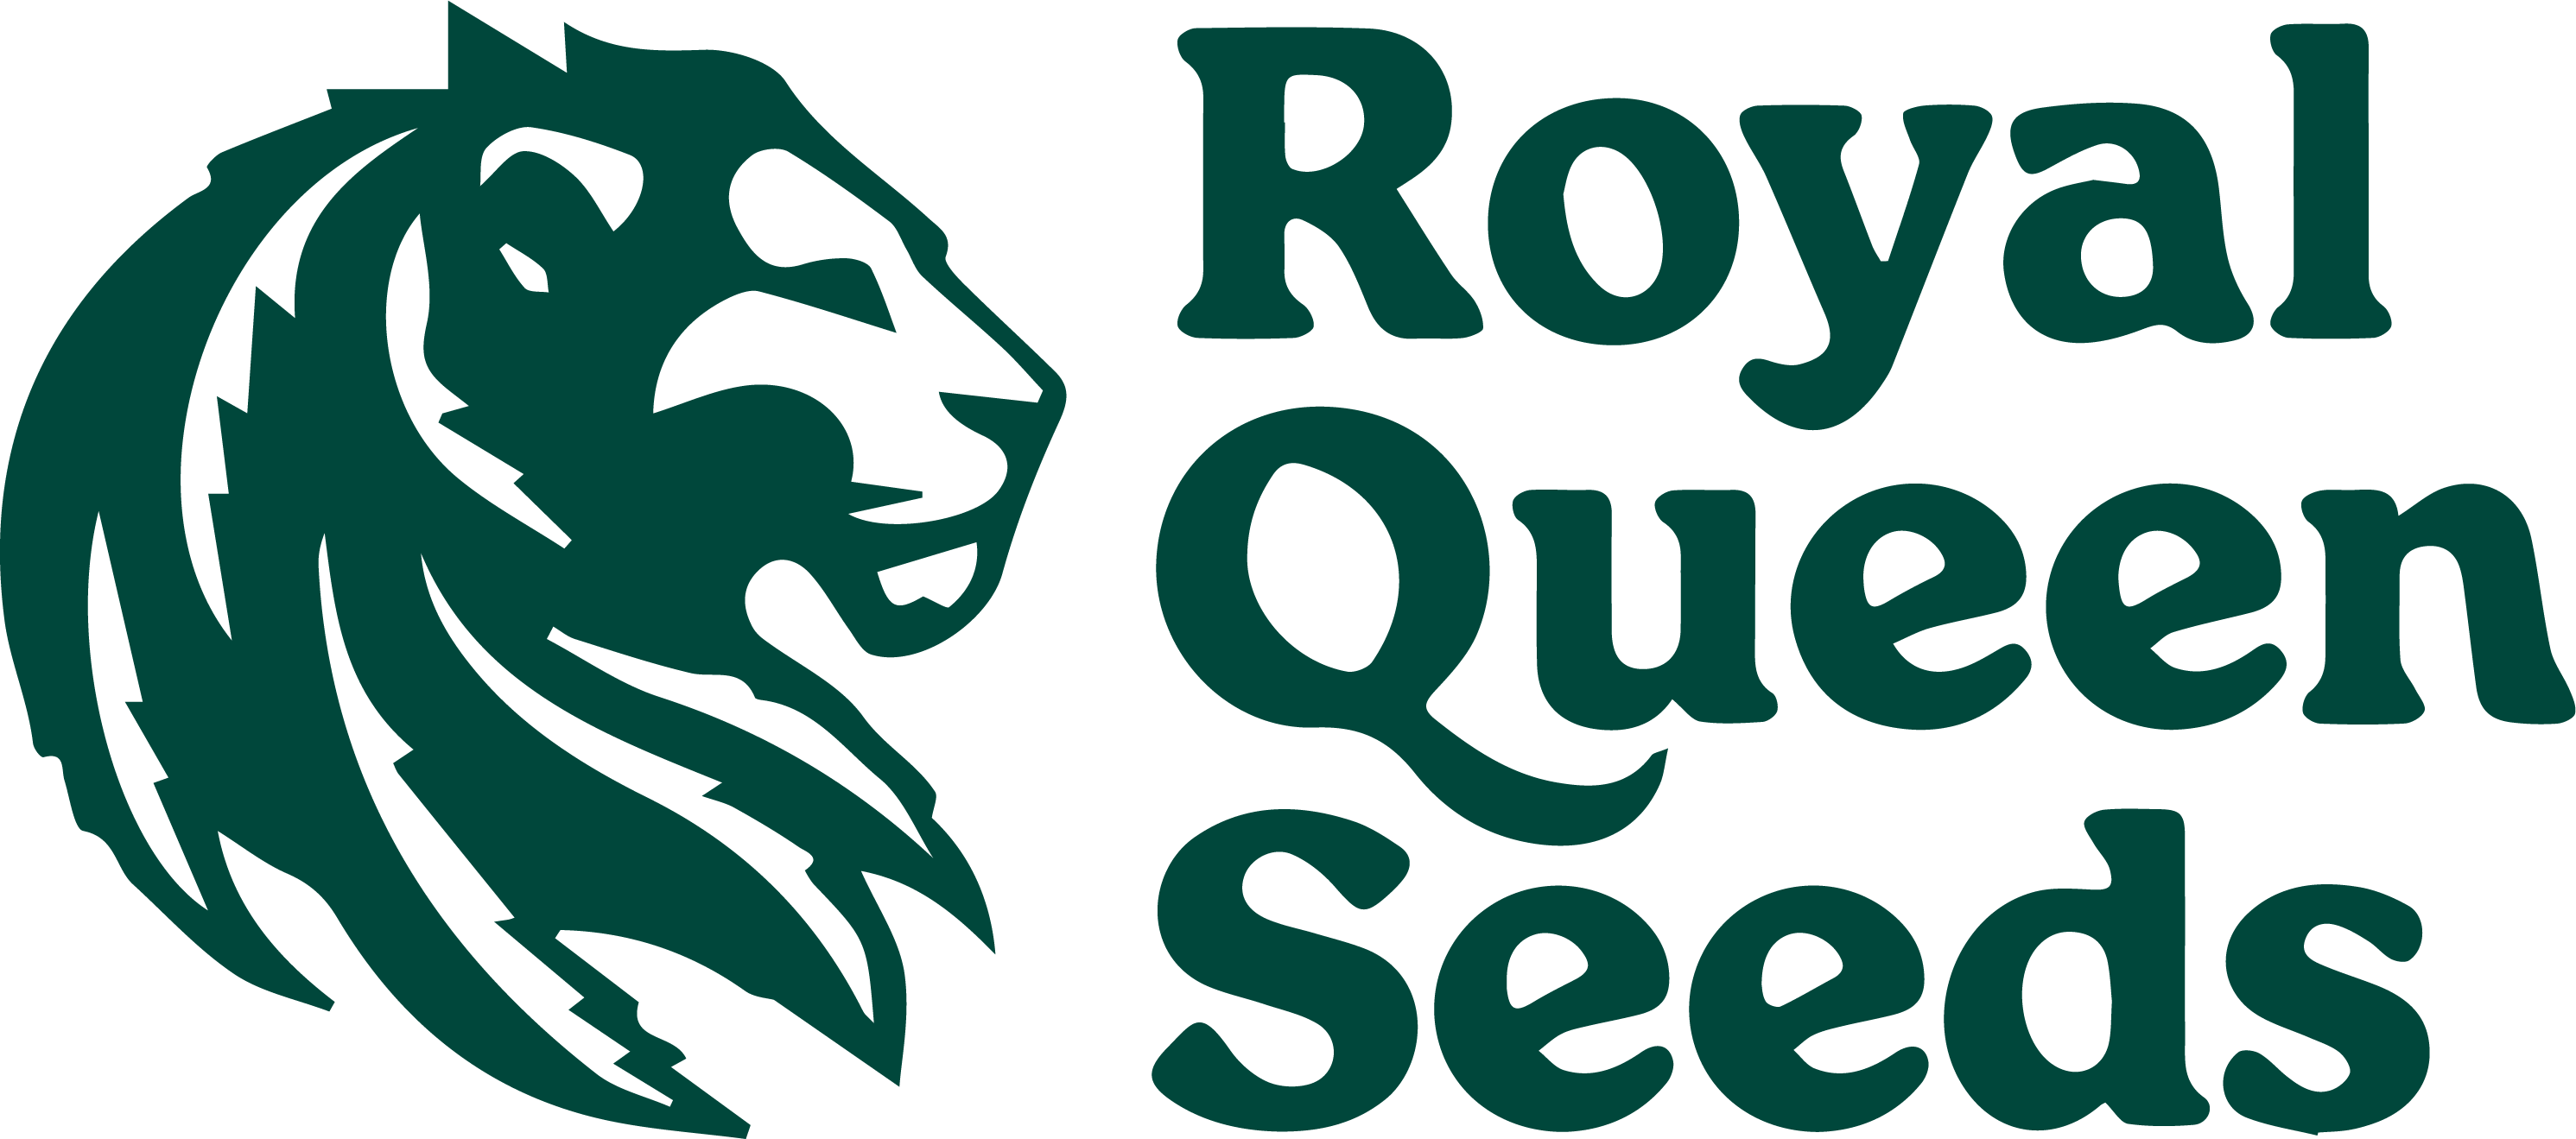 Royal Queen Seeds - Regular cannabis seeds - Tyson 2.0